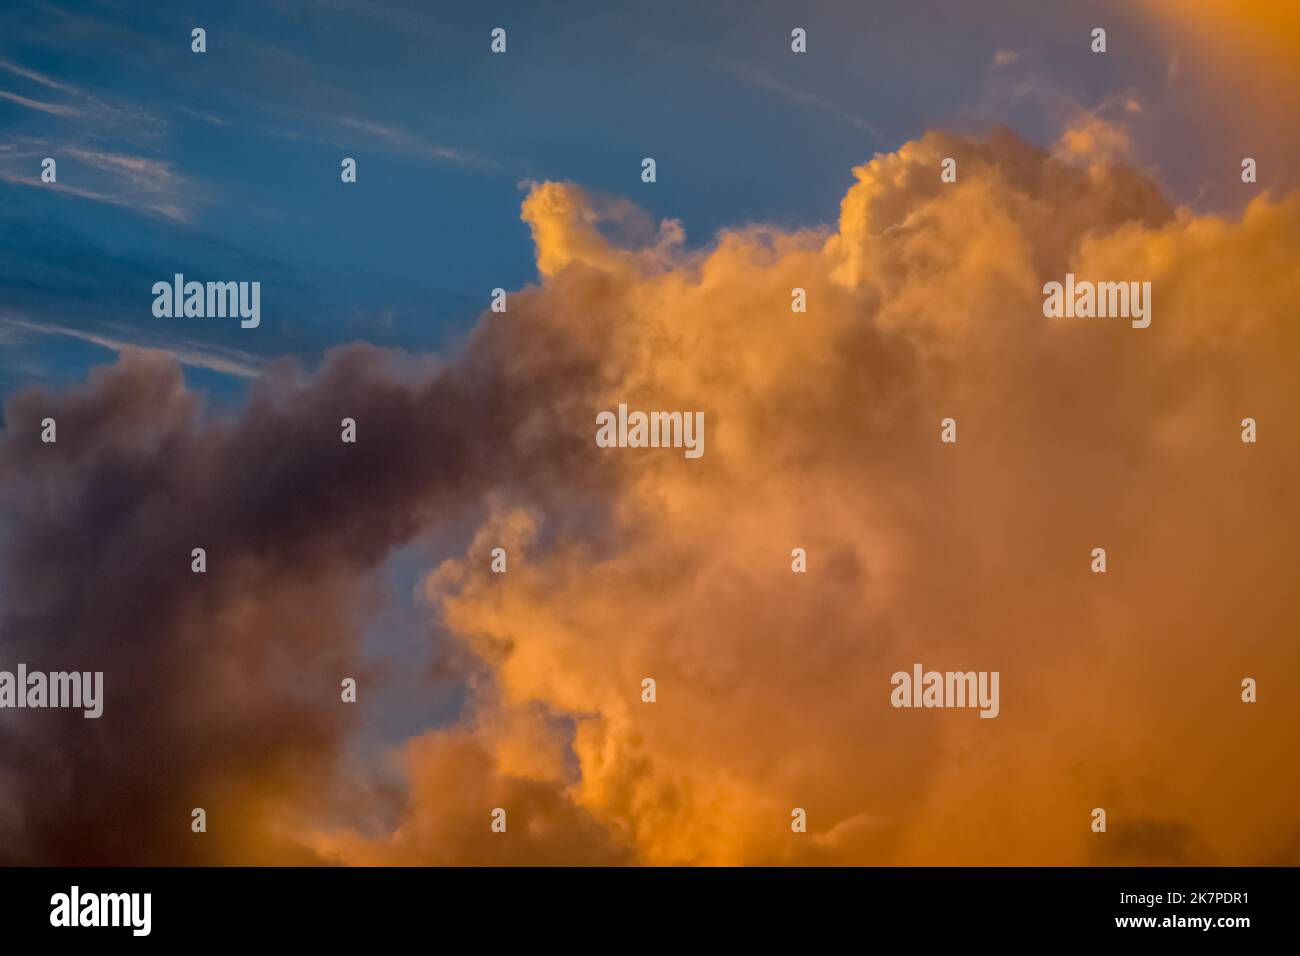 Alba cielo drammatico con nuvole in fila, paesaggio colorato Foto Stock